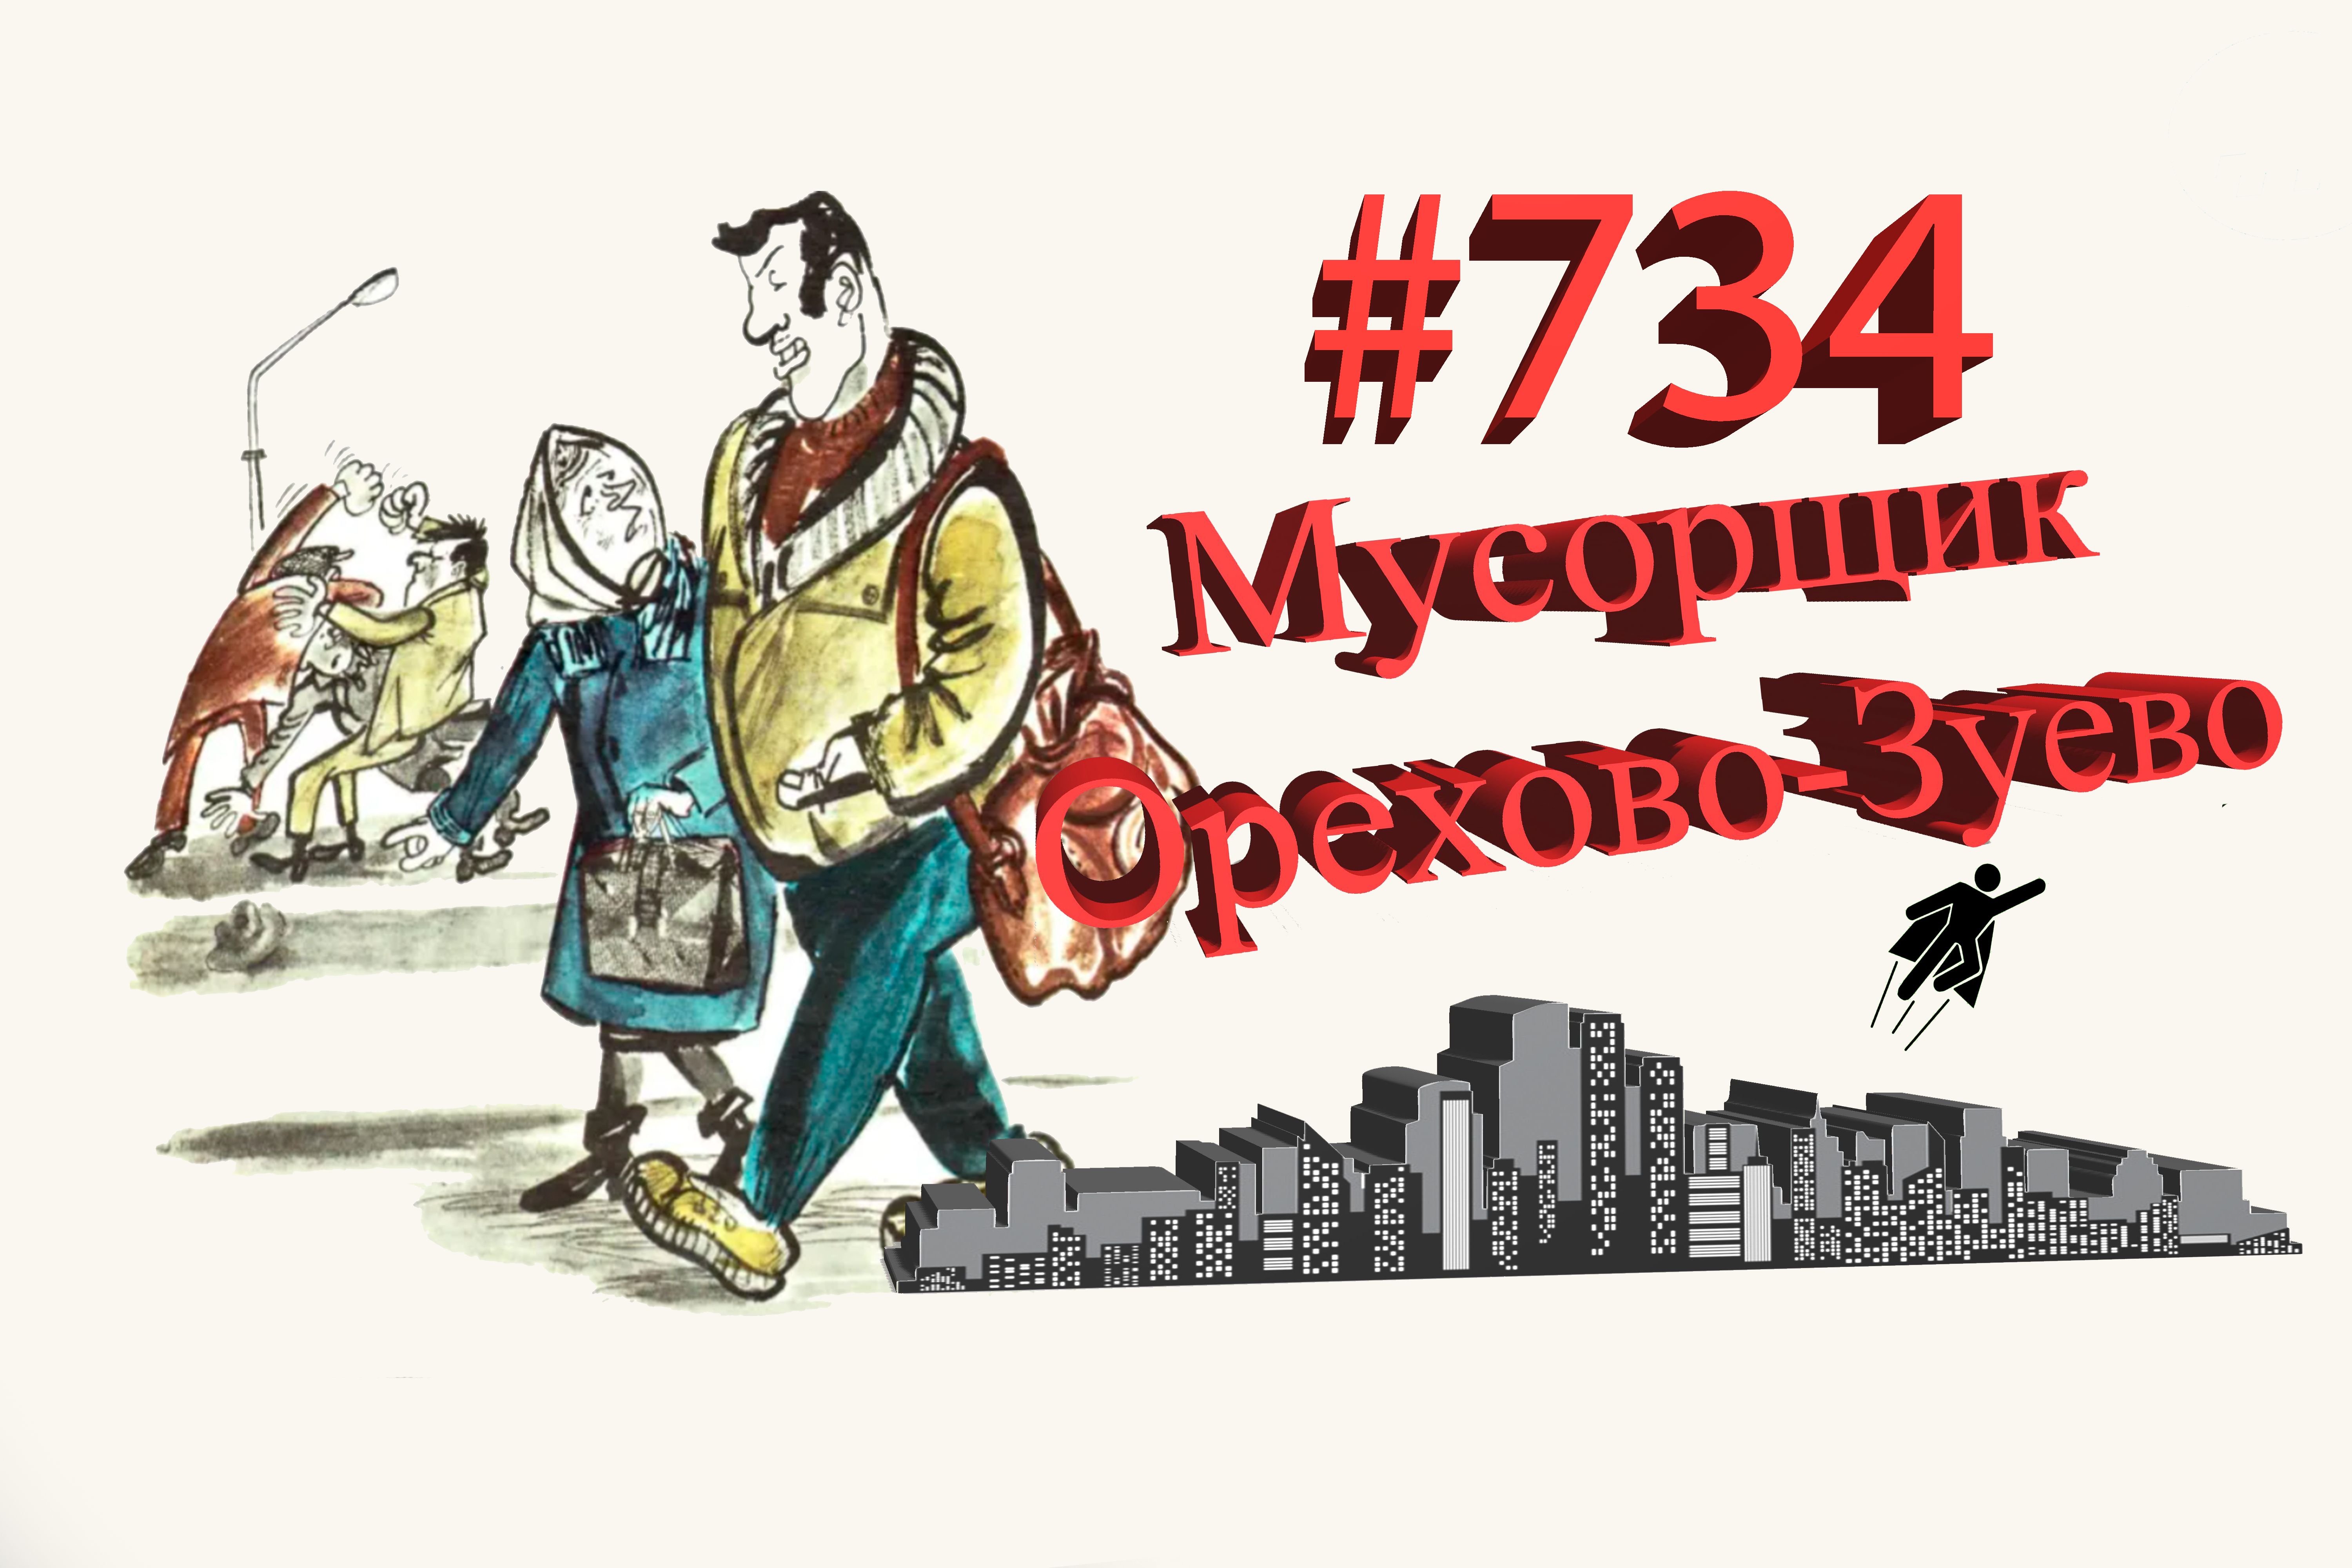 Подмосковье сегодня #734 Орехово-Зуево